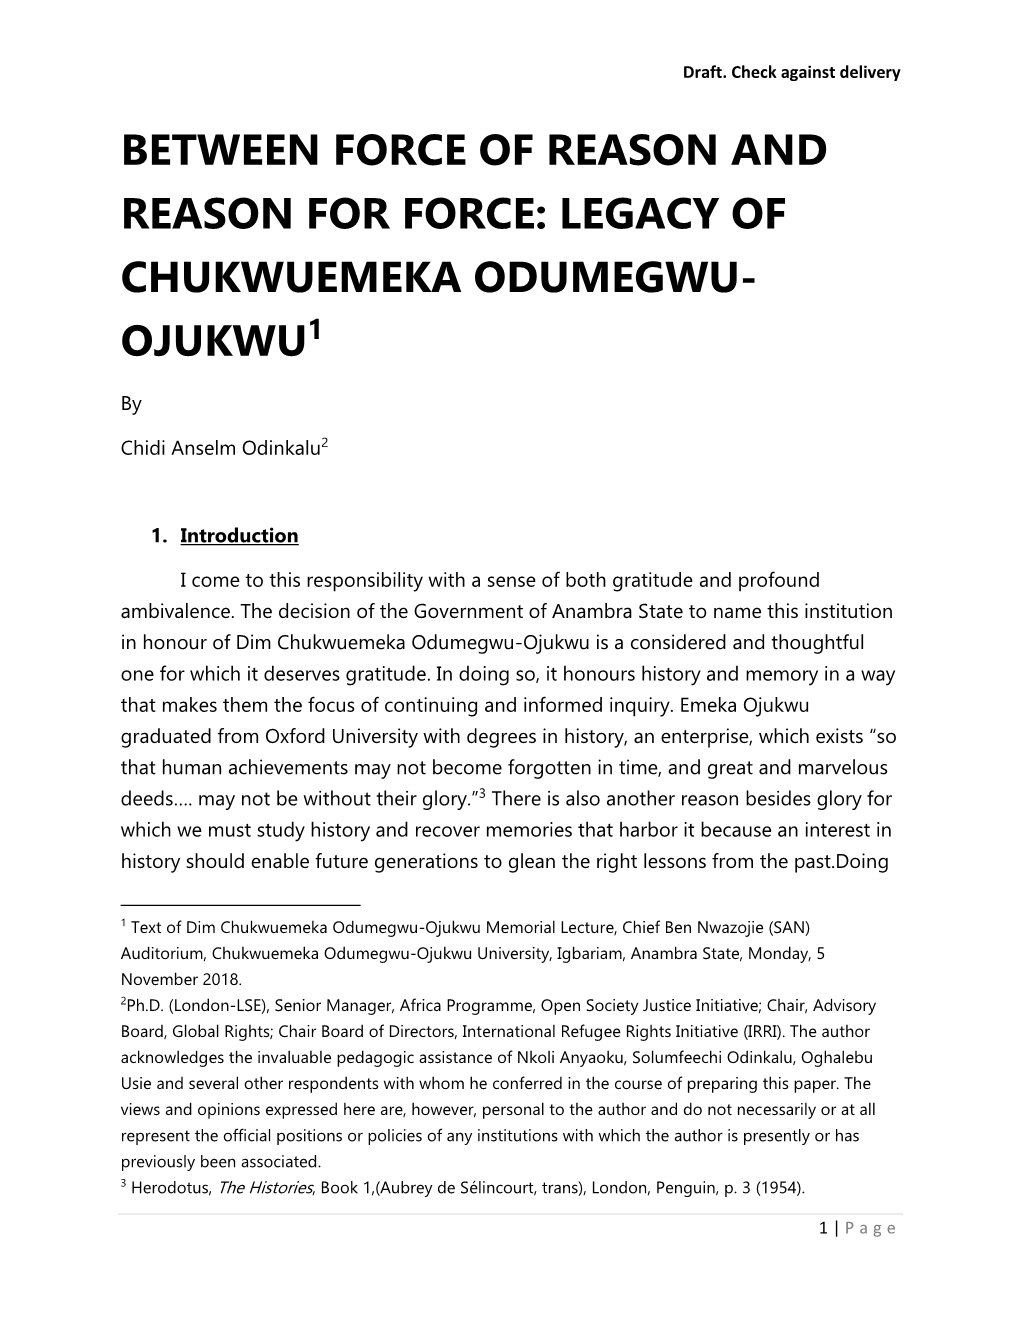 Between Force of Reason and Reason for Force: Legacy of Chukwuemeka Odumegwu- Ojukwu1